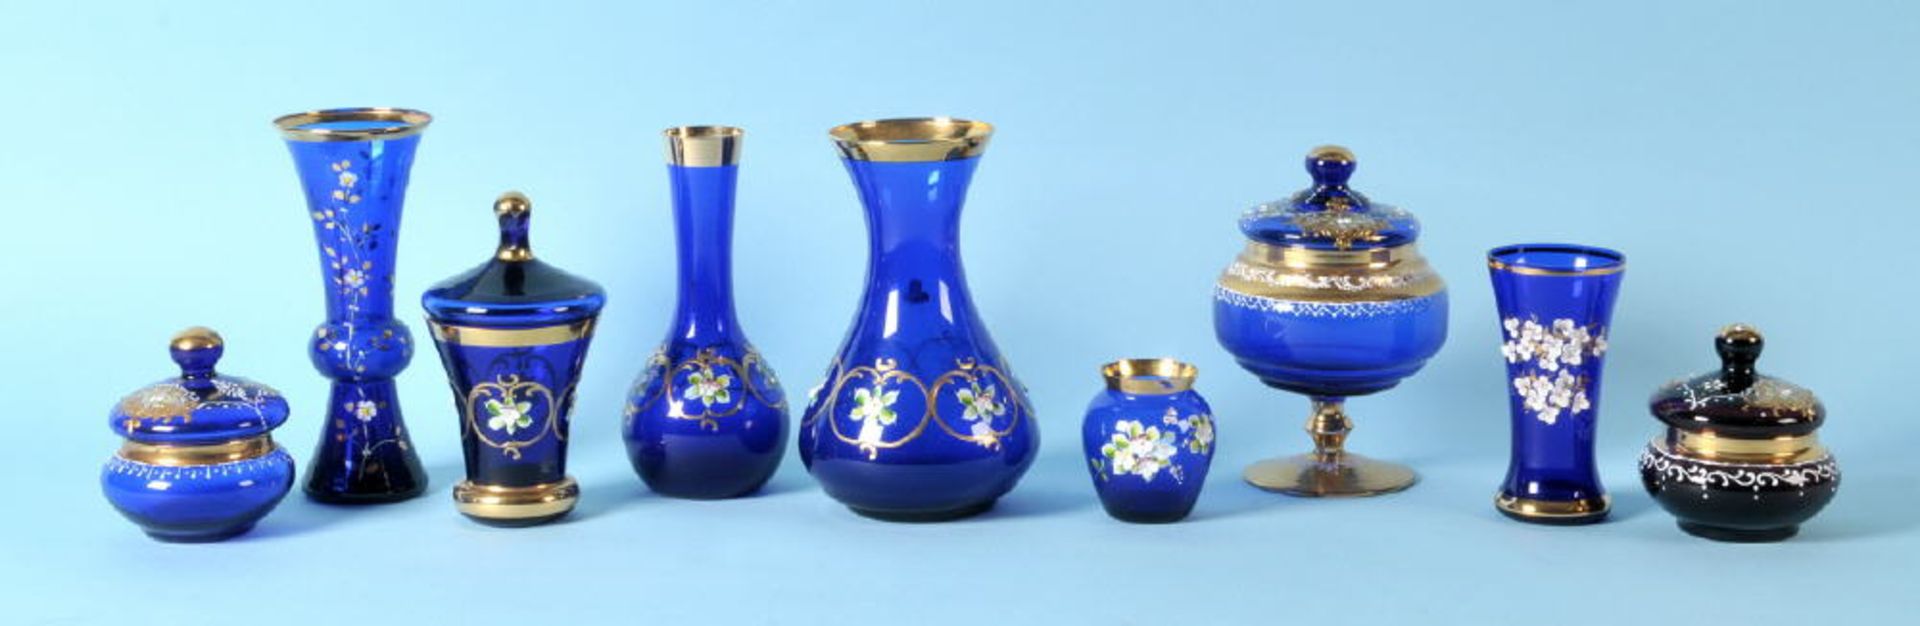 Glasgefäße, 9 Stückblaues Glas, handbemalt, Blumen- u. Golddekor, versch. Formen, H= 8-20 cm, 5